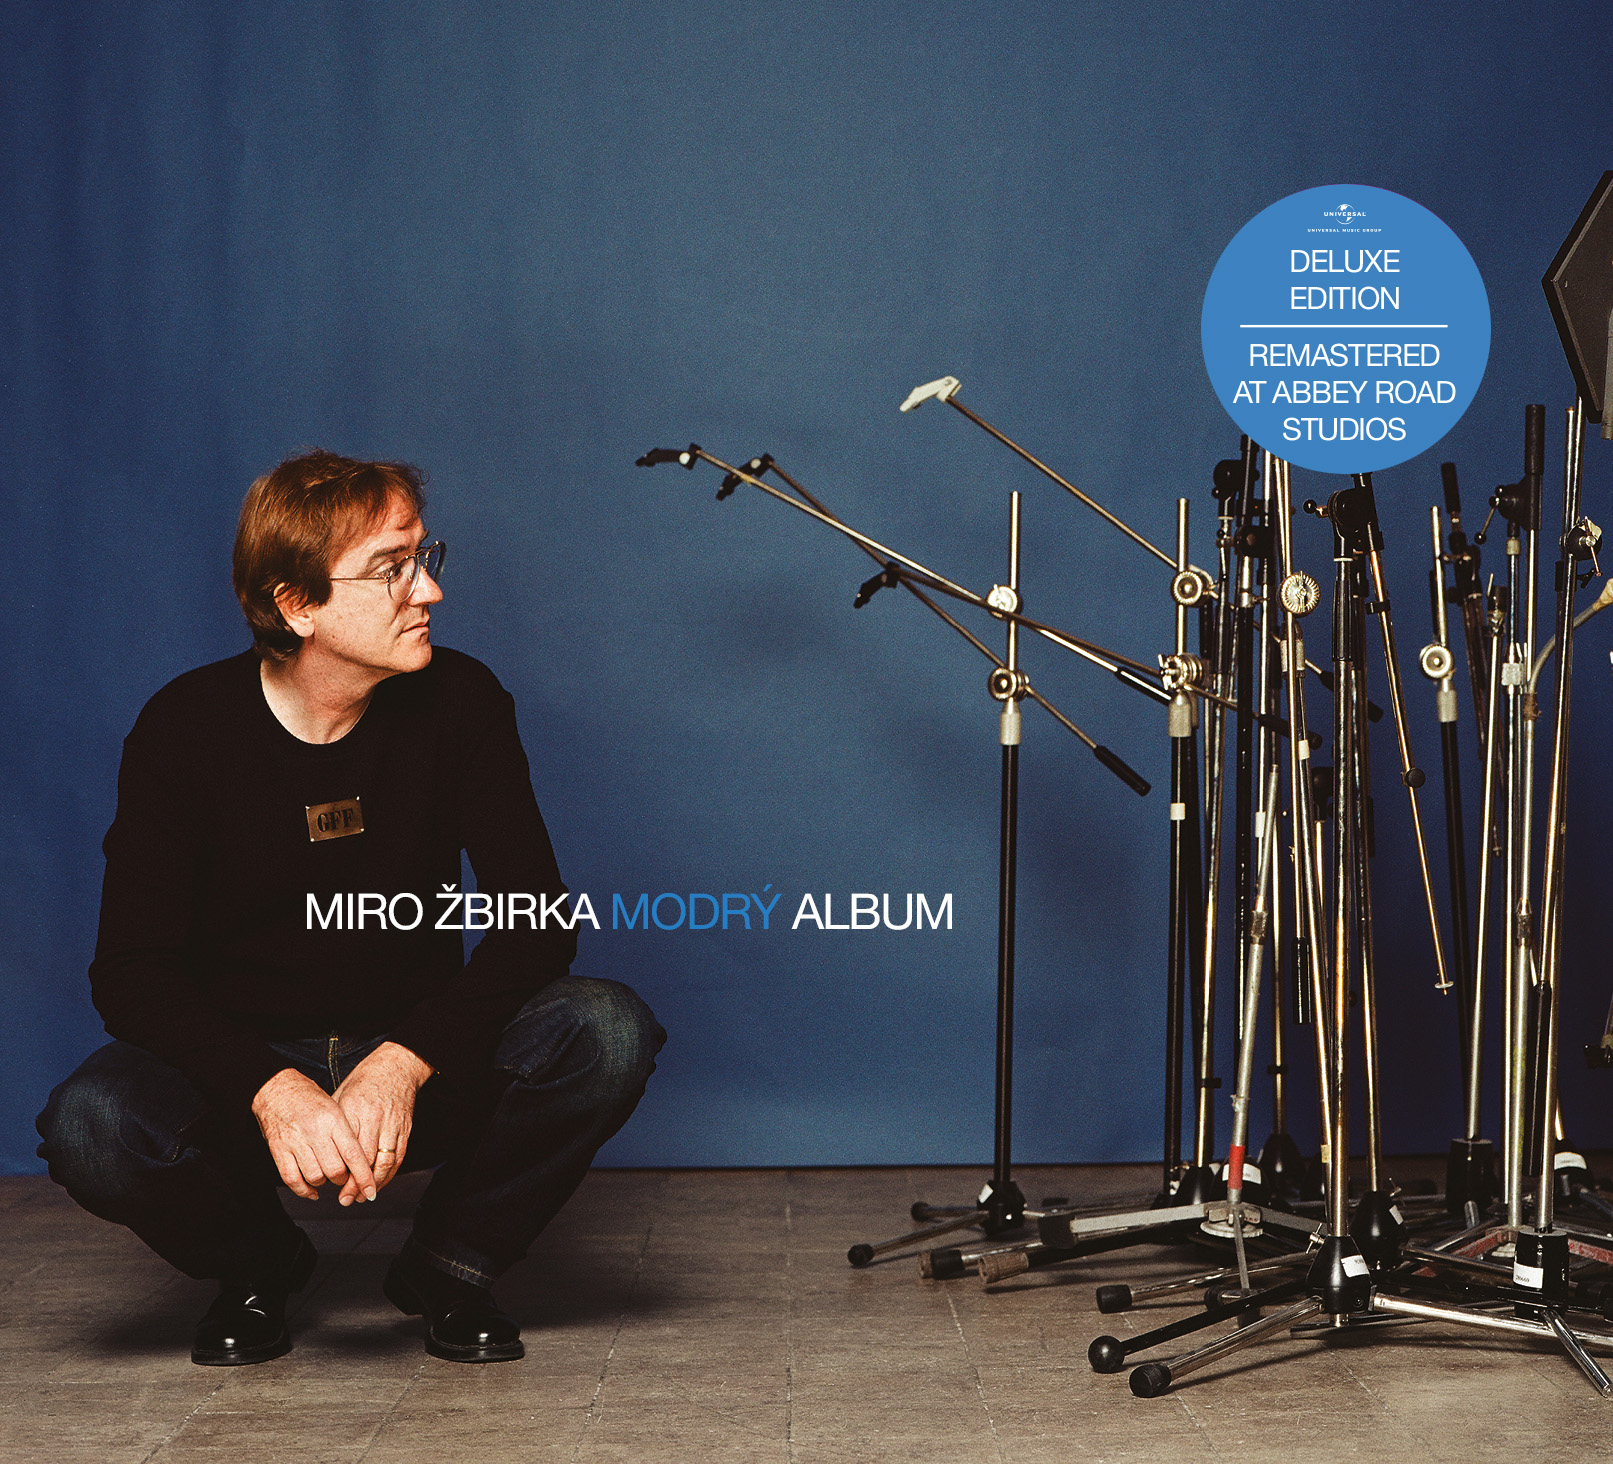 CD Shop - ZBIRKA MIRO MODRY ALBUM/DELUXE EDITION